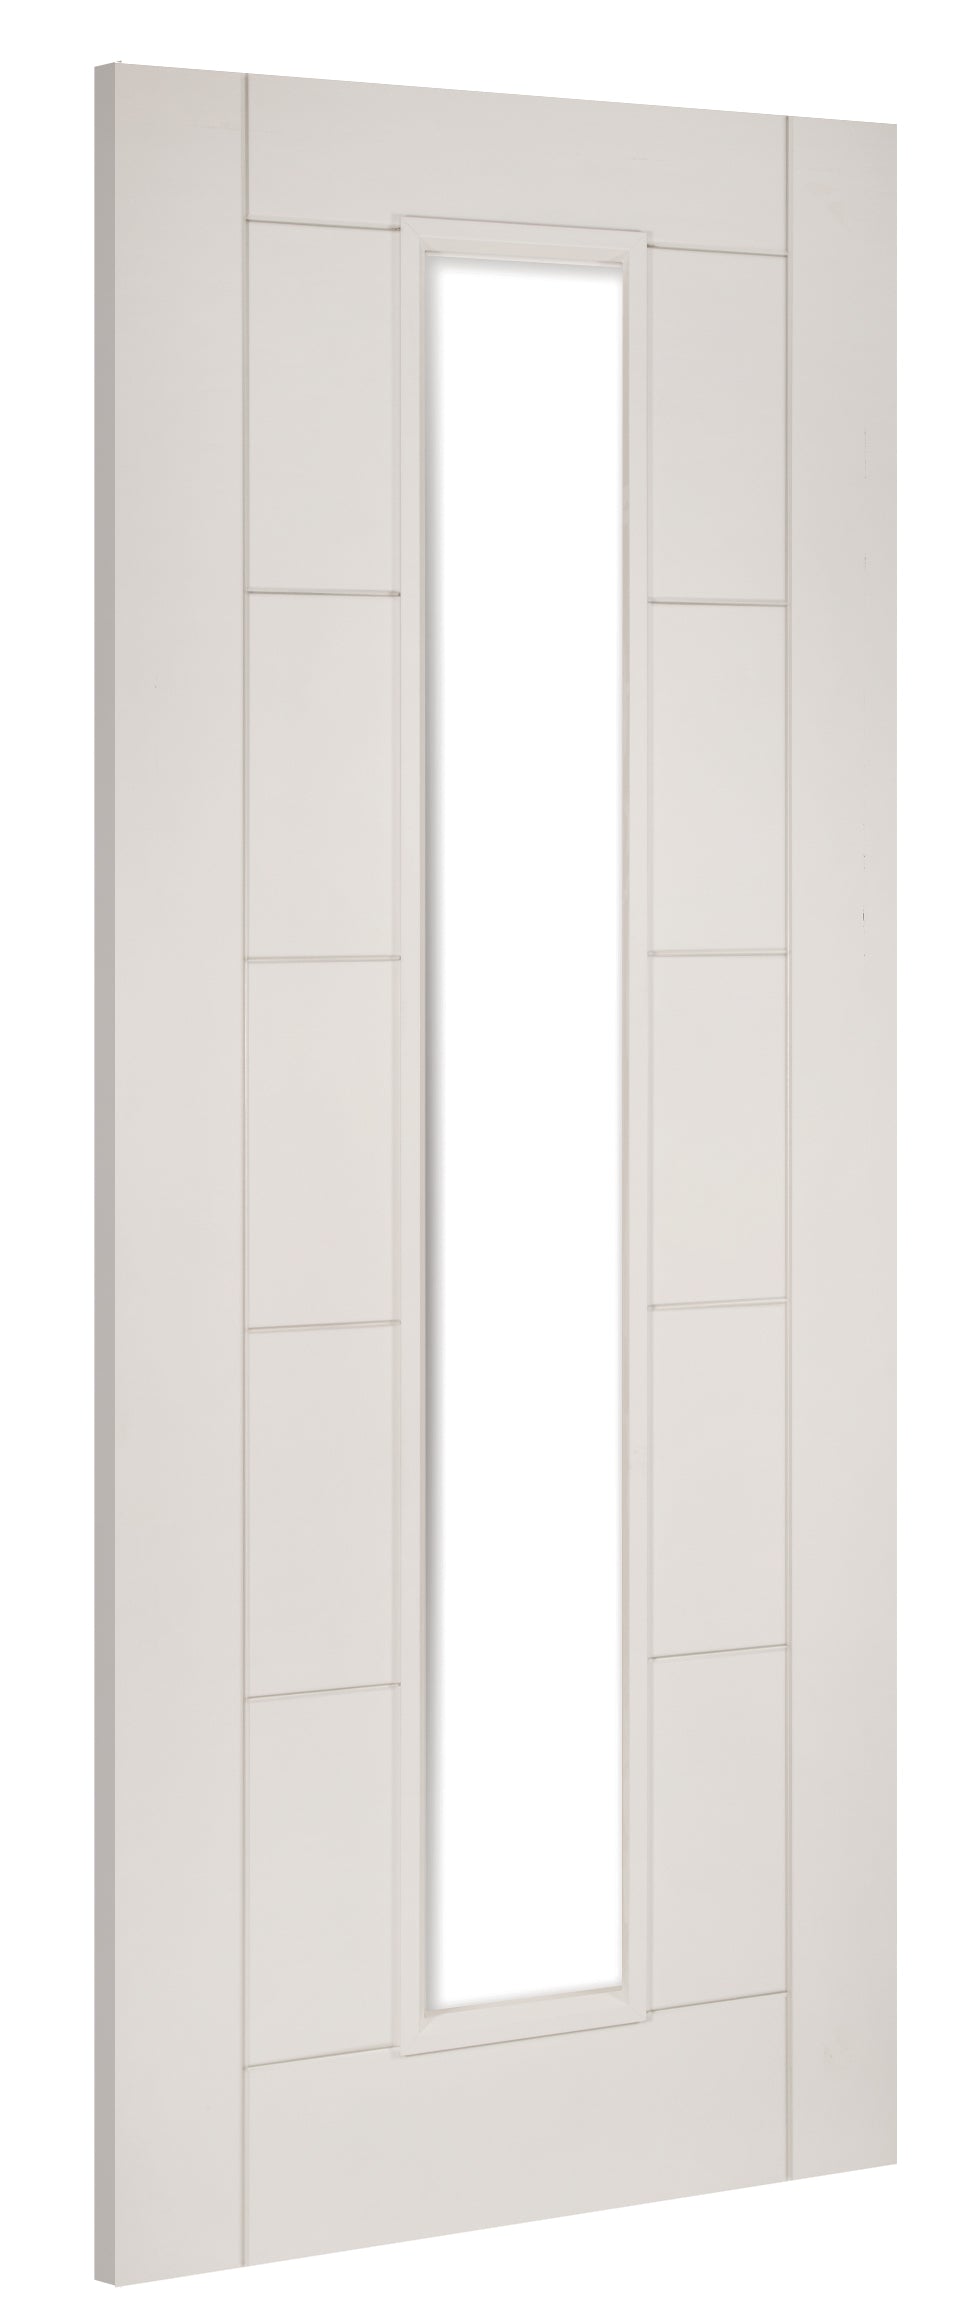 Deanta HP16G White Primed Door - Glass/Unglazed